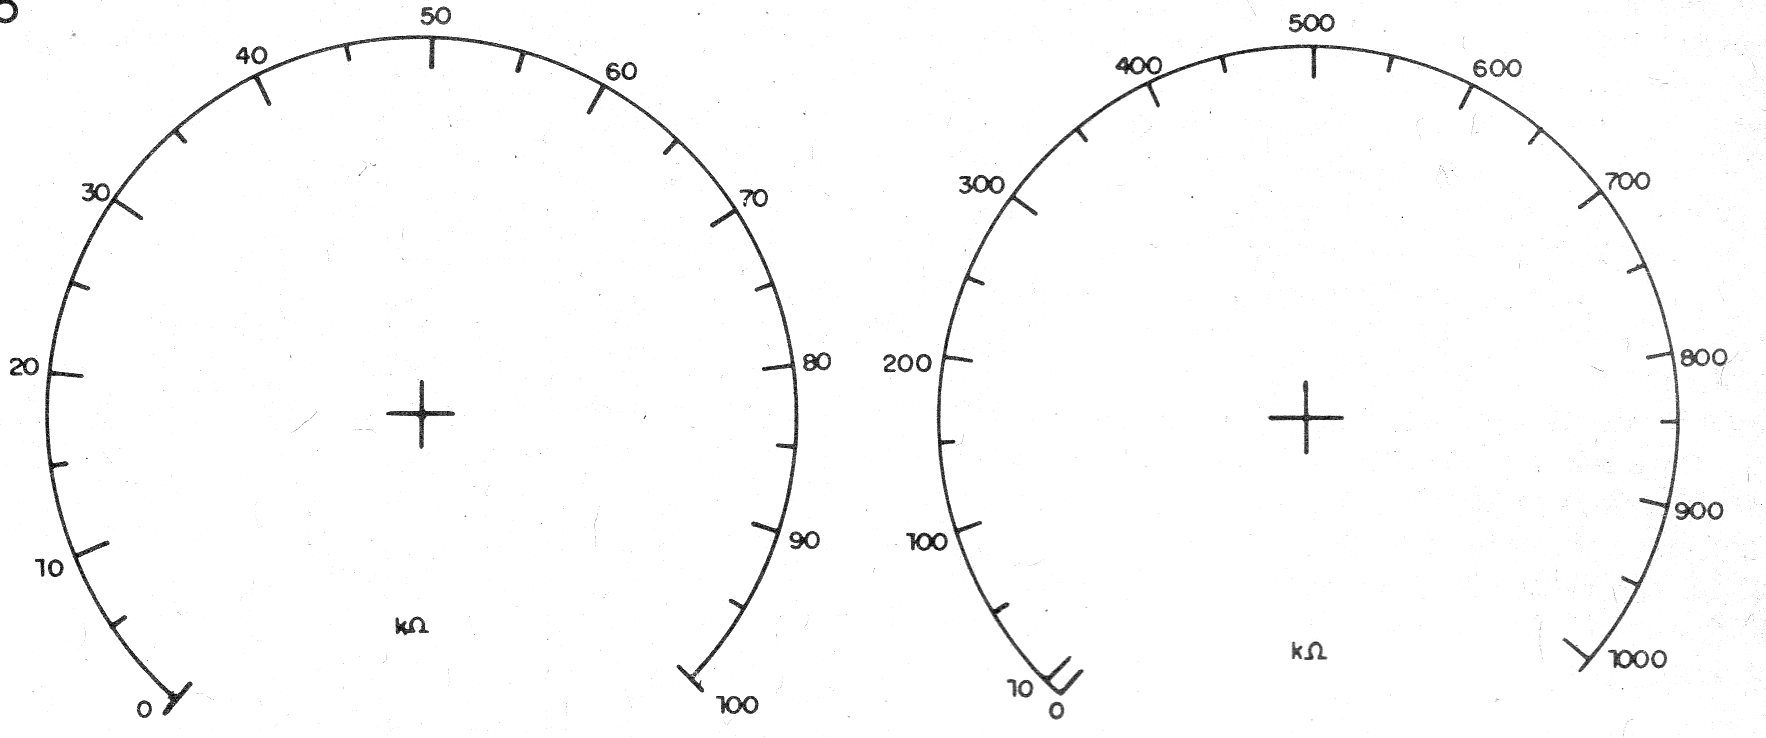    Figura 6 – As escalas para o aparelho
